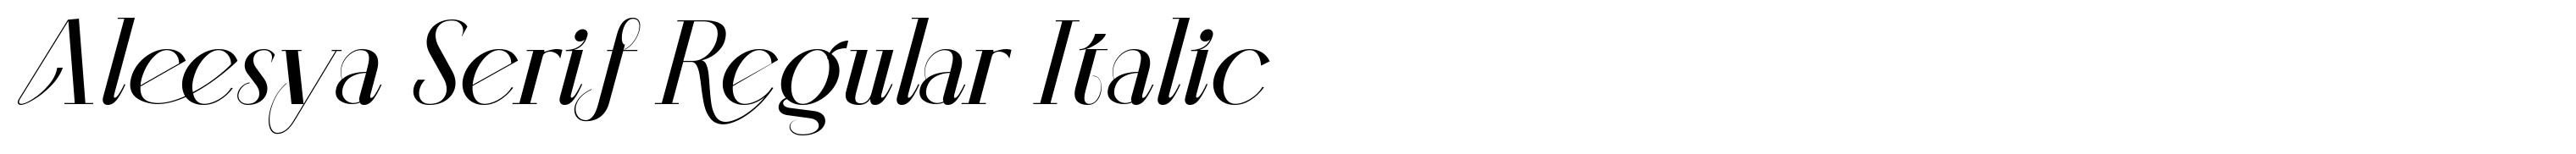 Aleesya Serif Regular Italic